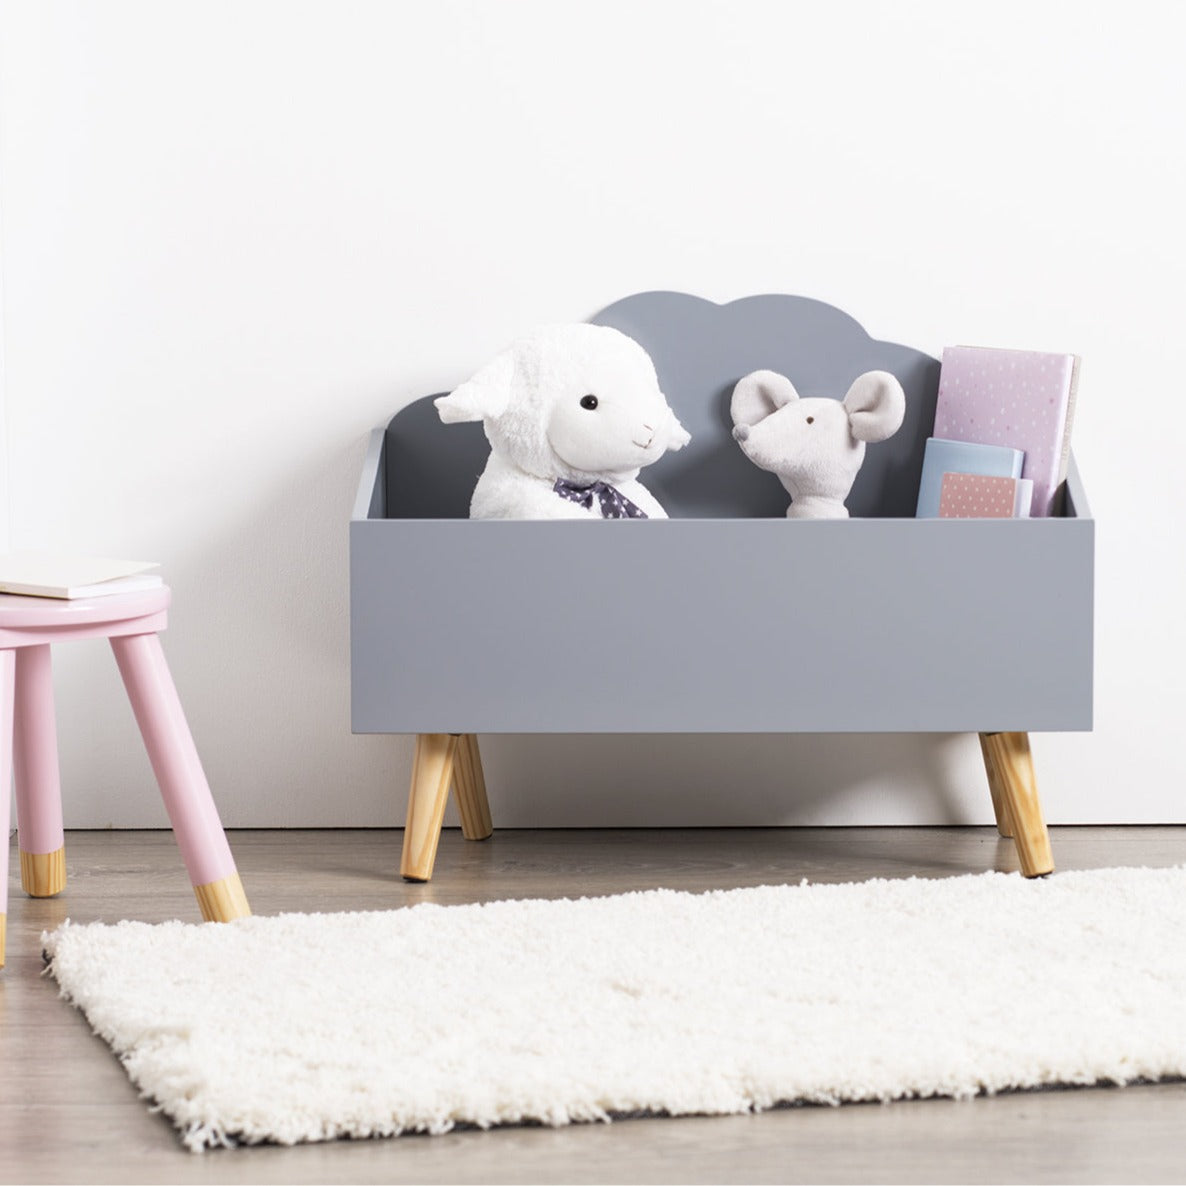 ארגז אחסון לחדר ילדים בצורת ענן מושלם לאחסון צעצועים ב-2 צבעים לבחירה